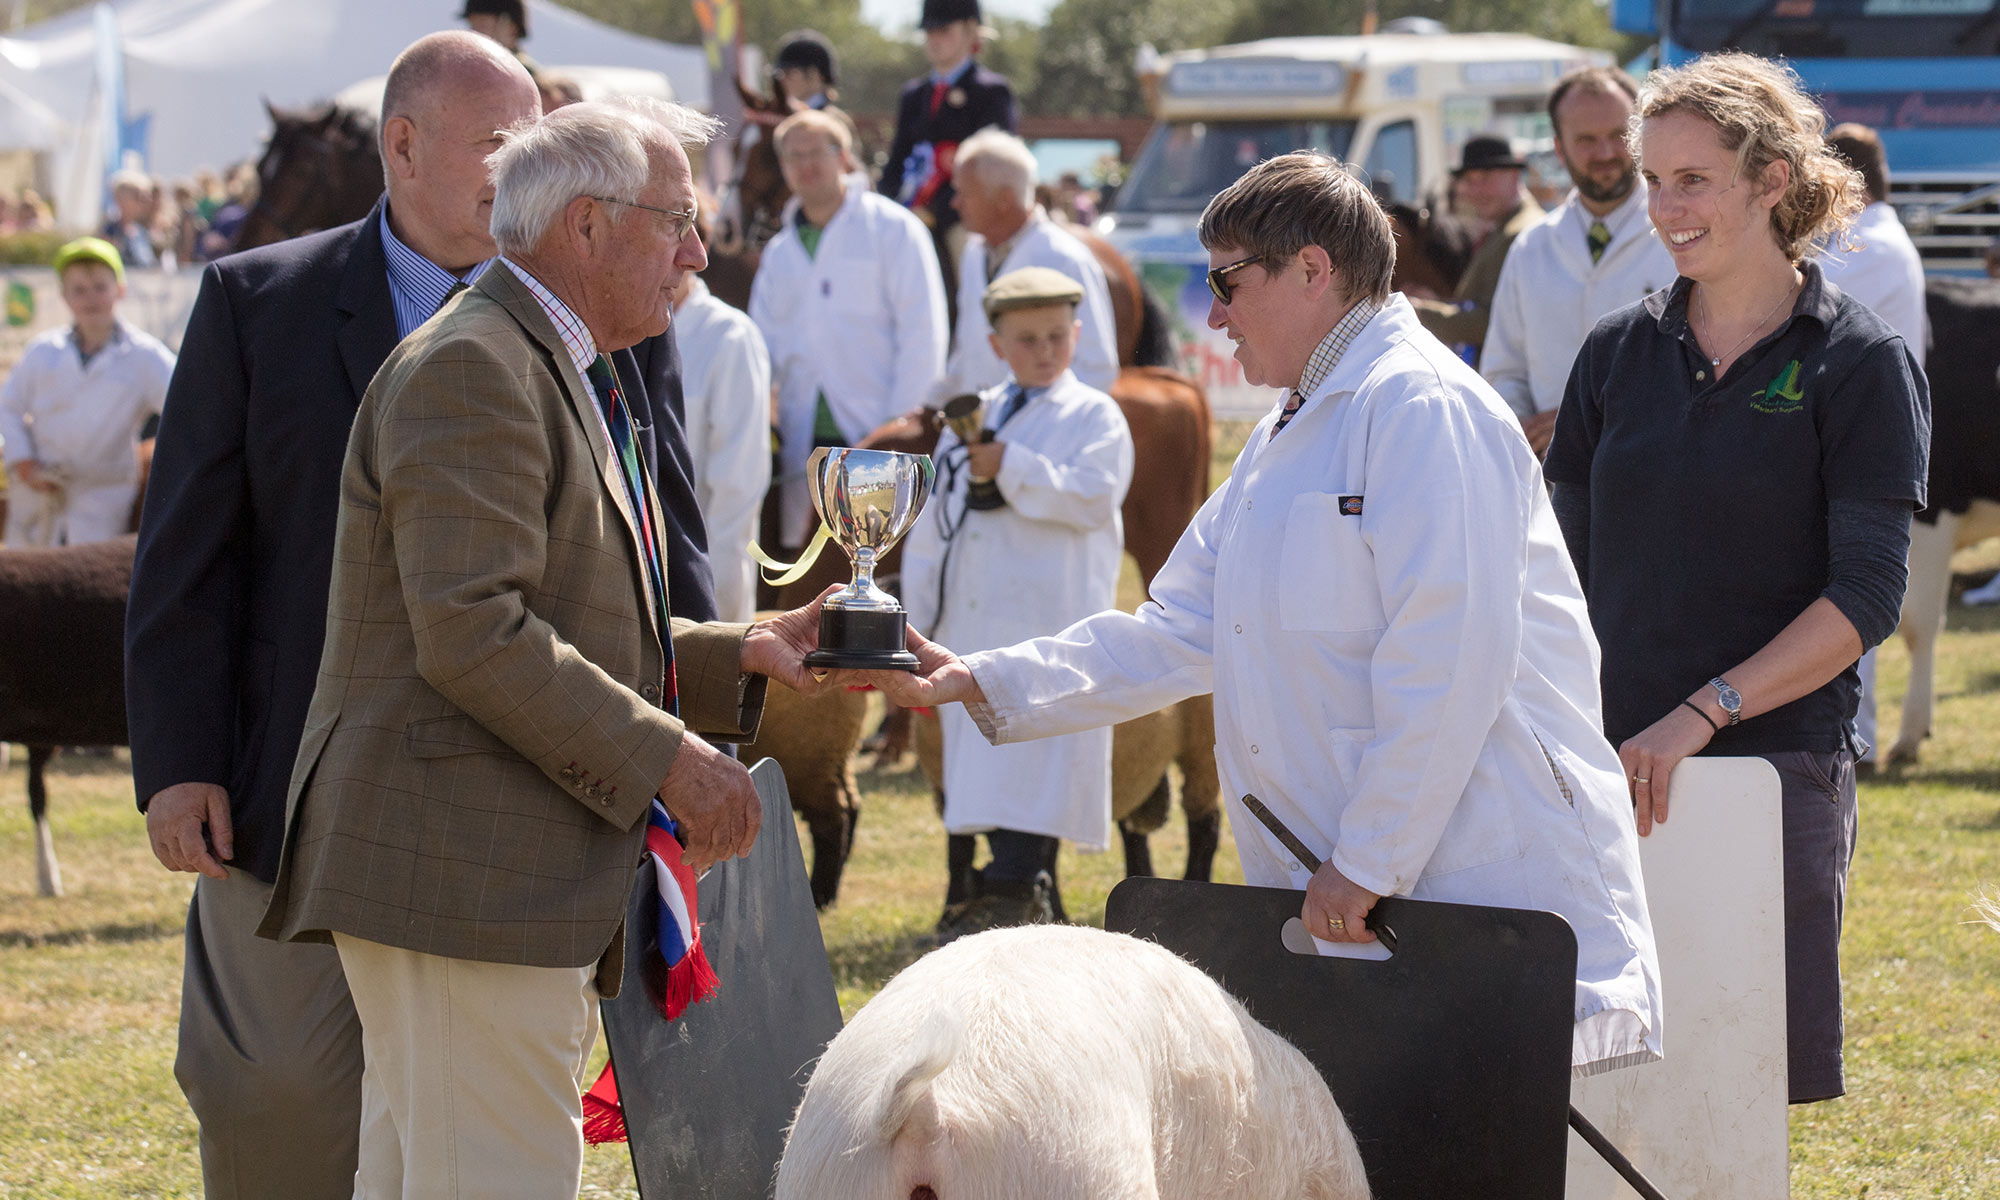 Farmer receiving trophy